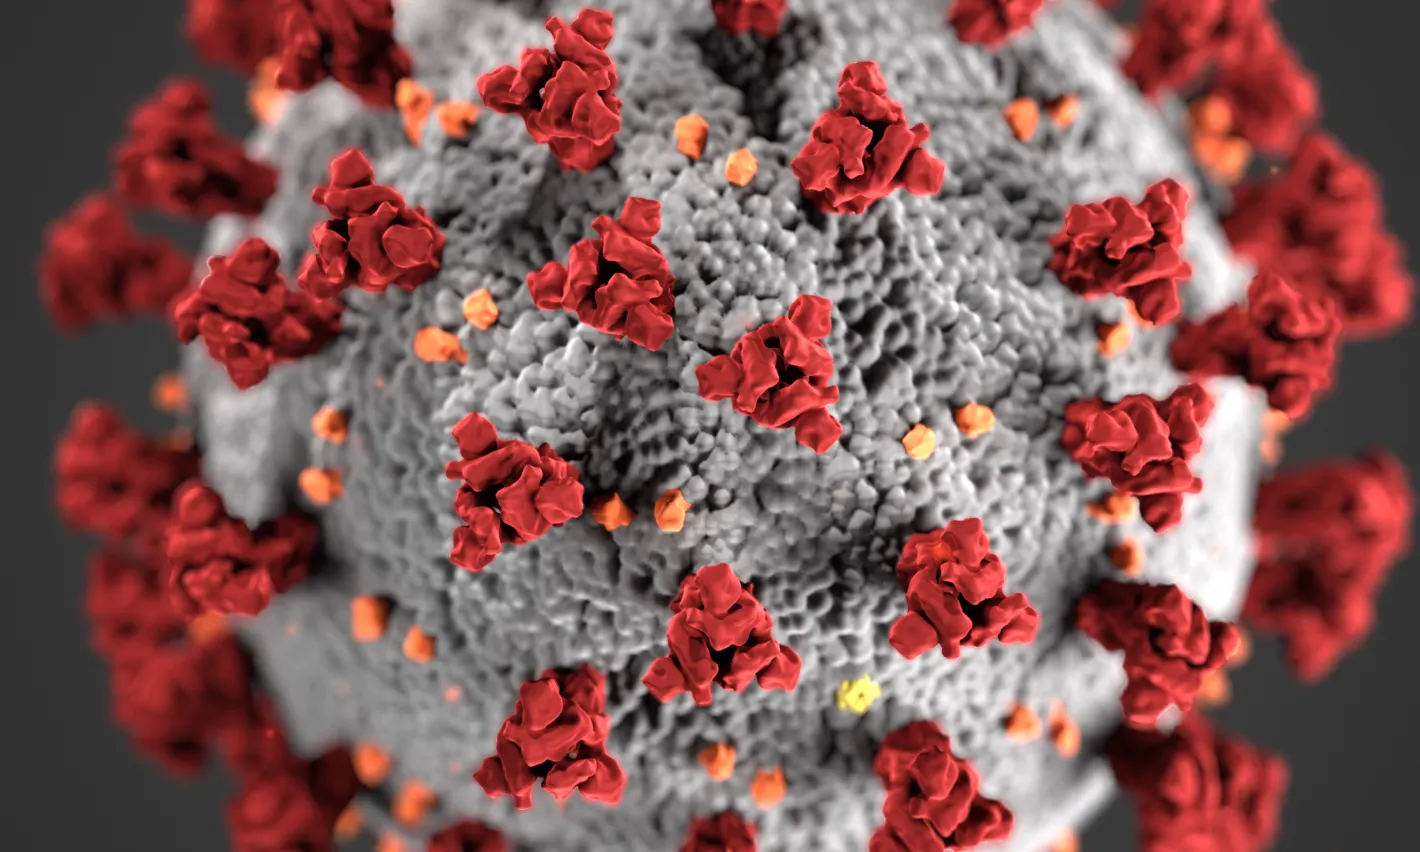 El coronavirus també afecta al teixit associatiu, un sector principalment basat en l'atenció directa.